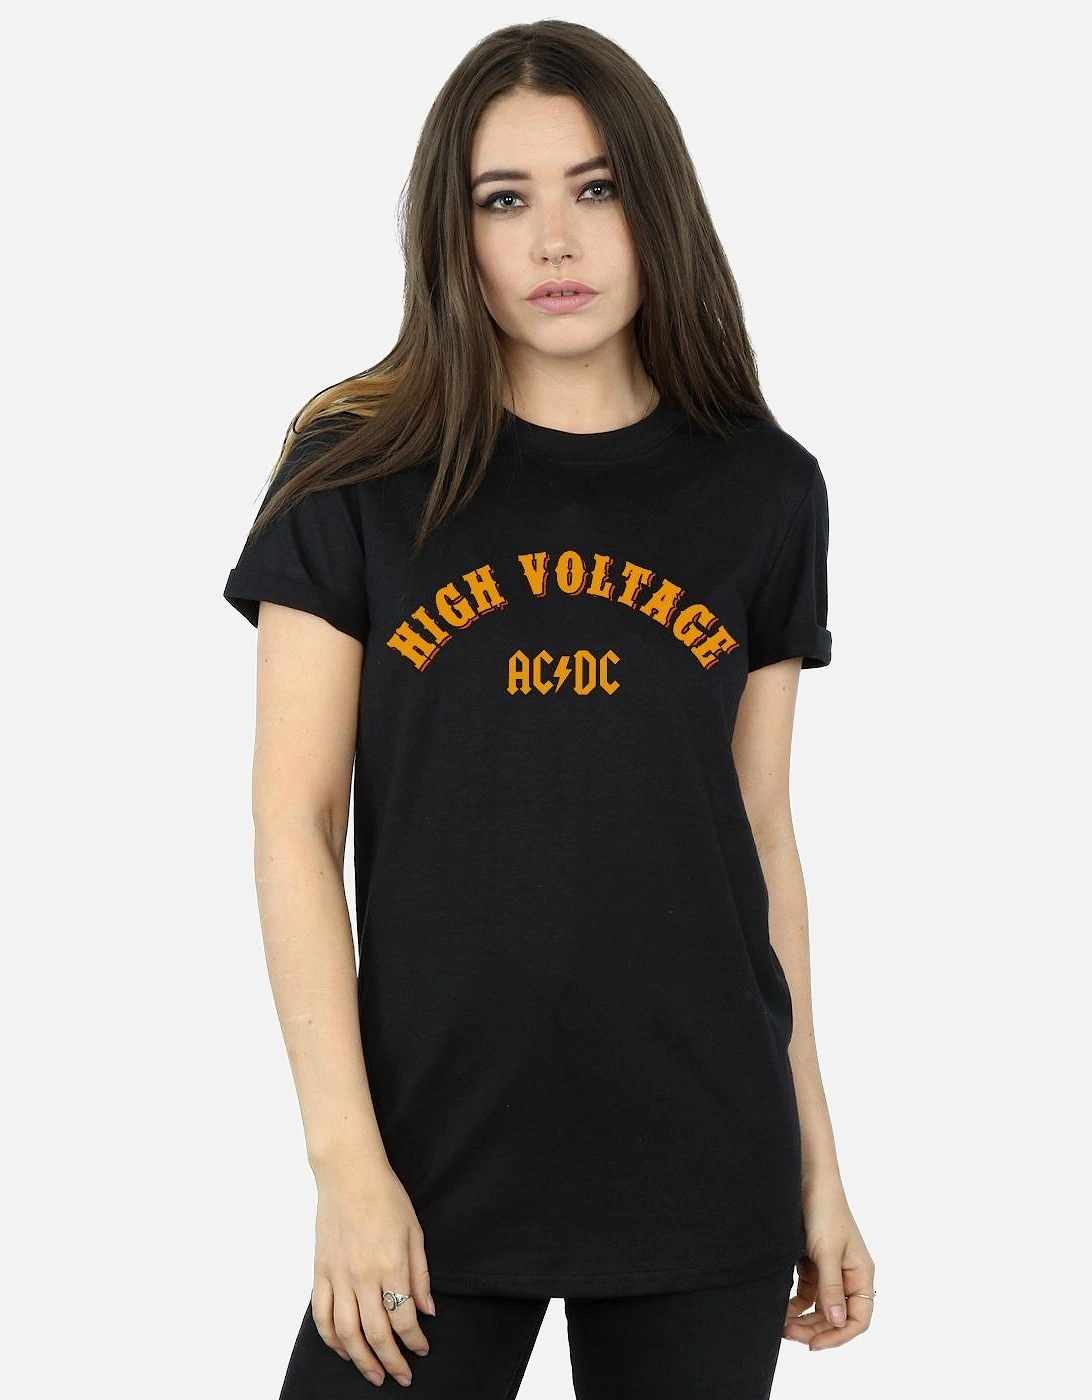 Womens/Ladies High Voltage Collegiate Cotton Boyfriend T-Shirt